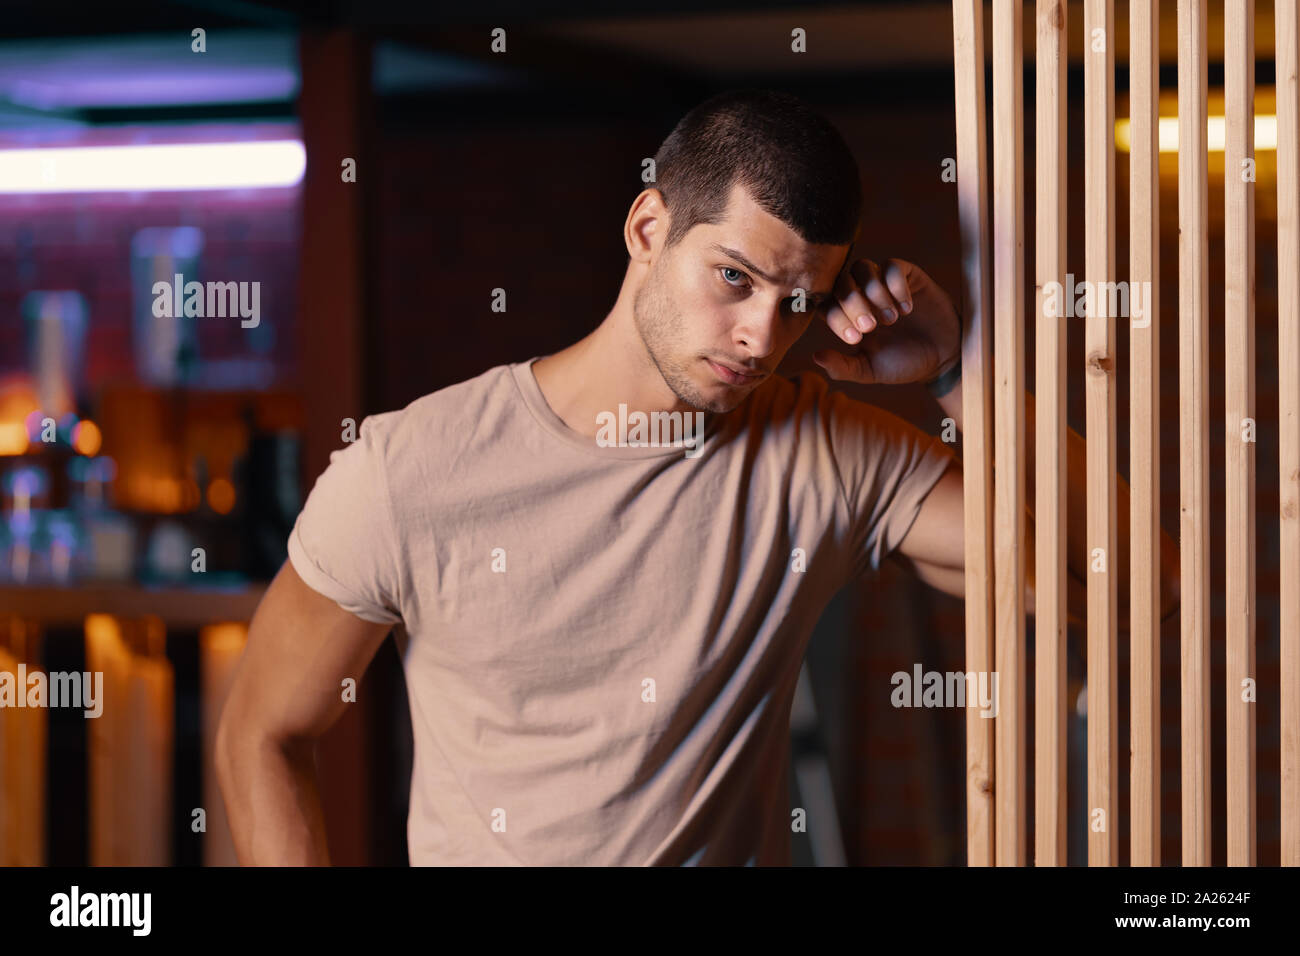 Close-up Portrait von attraktiven männlichen Models. Retro wave Porträt eines jungen Mannes in eine Bar. Modell in bunten hellen Neonlicht. Stockfoto